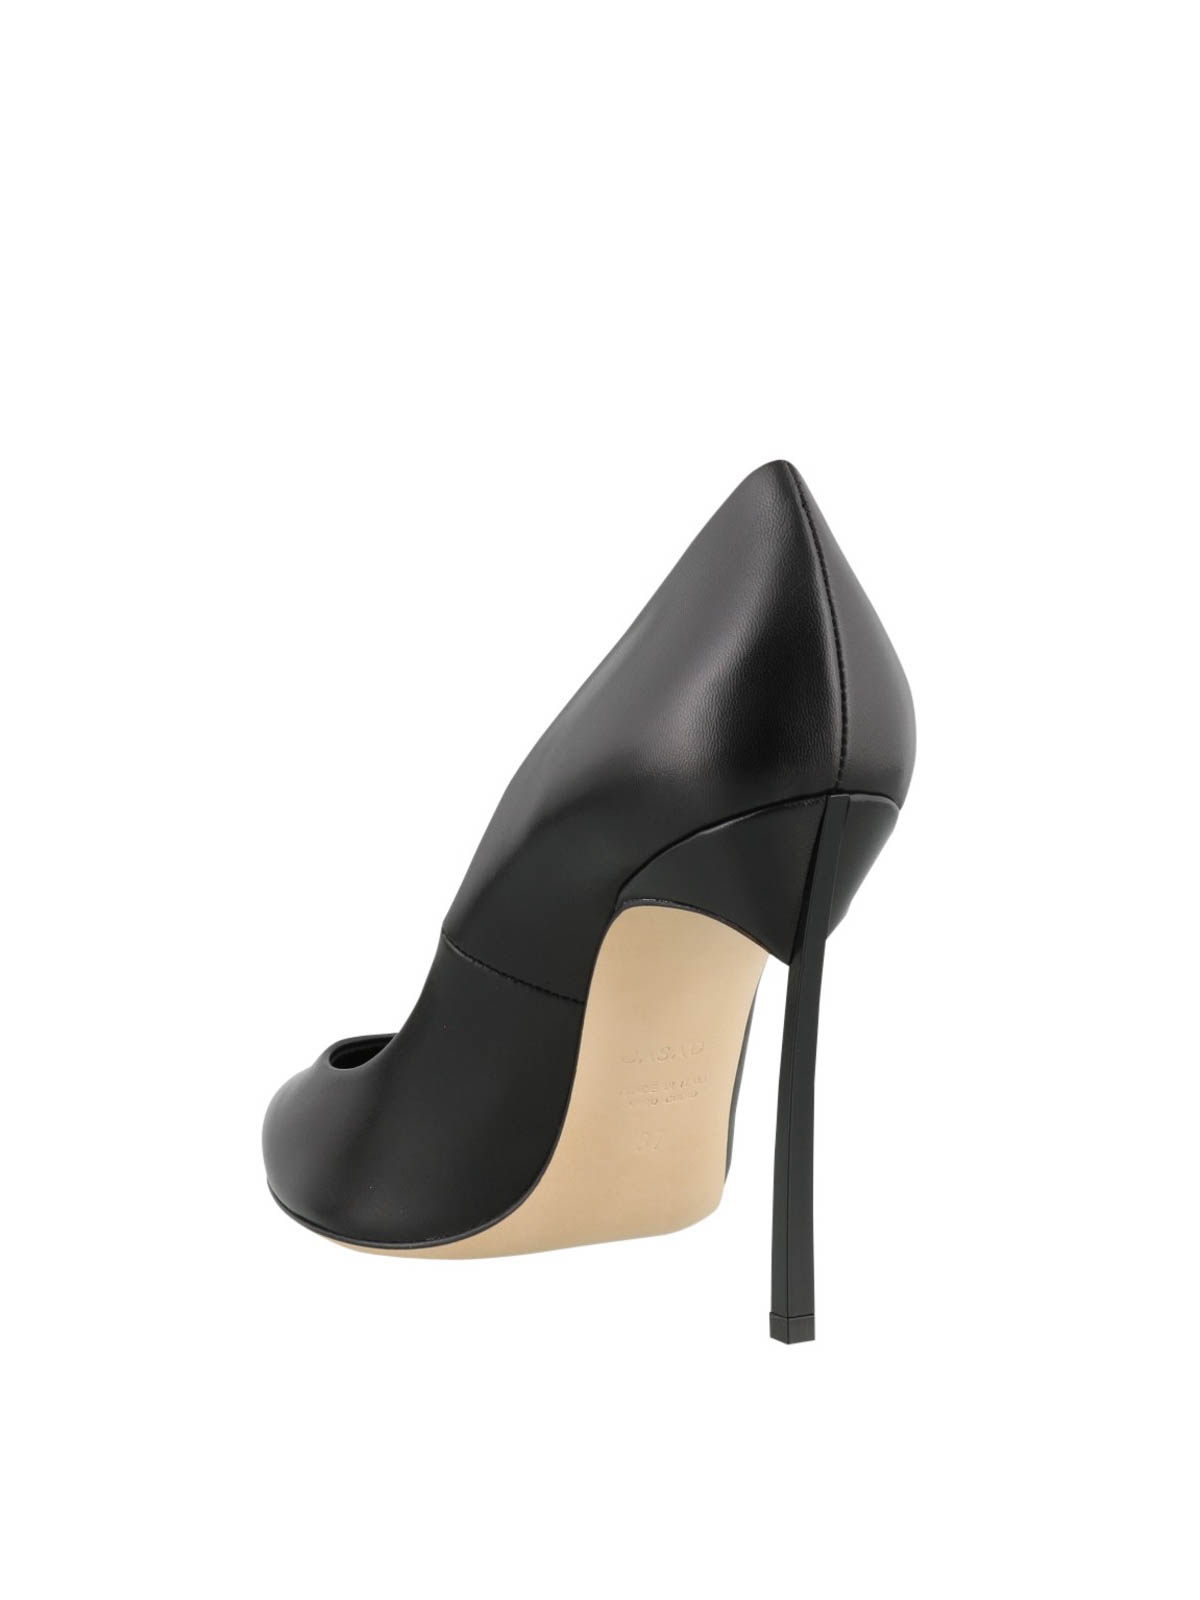 Court shoes Casadei - Blade heel pumps - 1F161D100HHMINO9000 | iKRIX.com